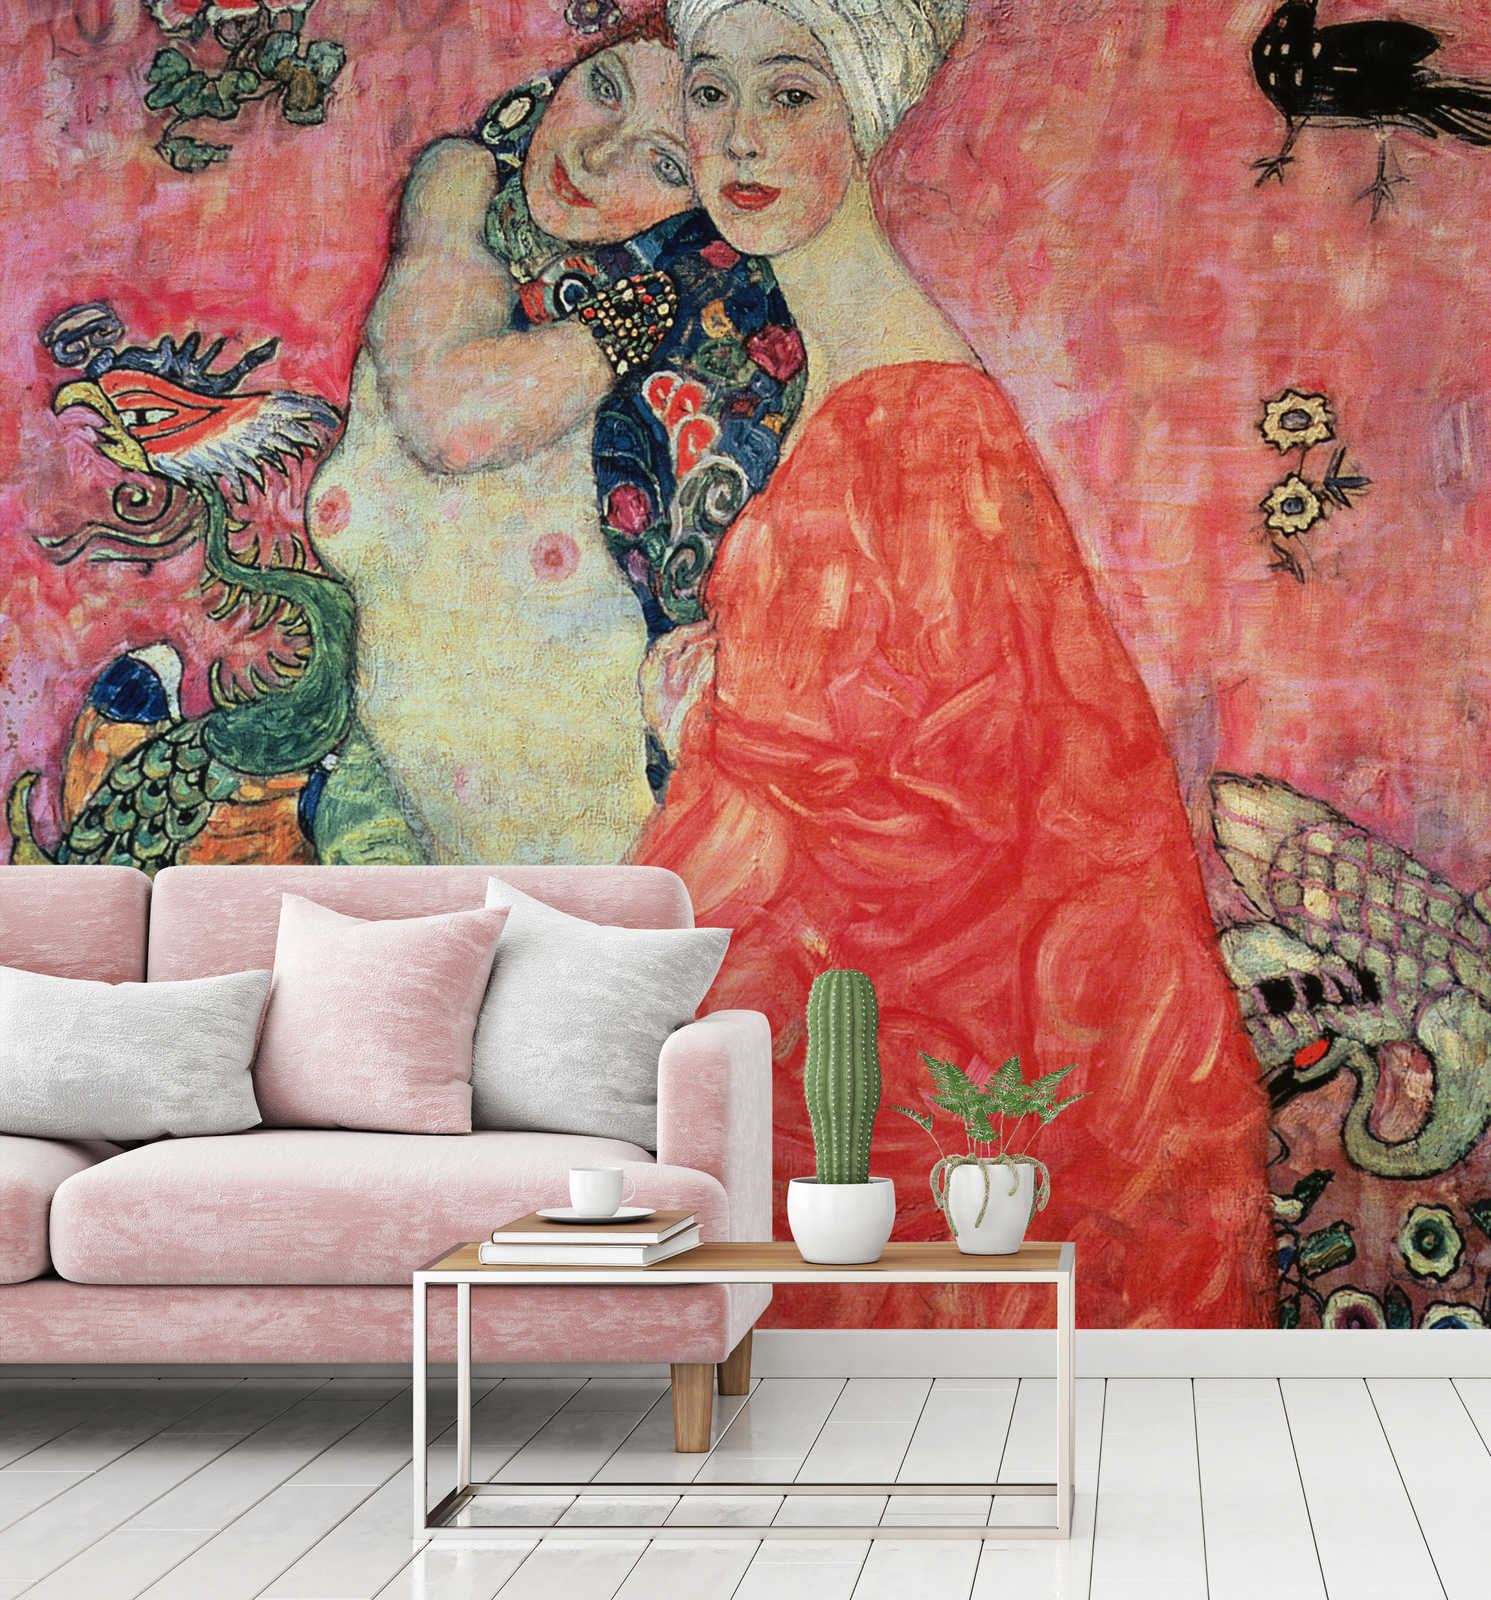             Mural "Las novias" de Gustav Klimt
        